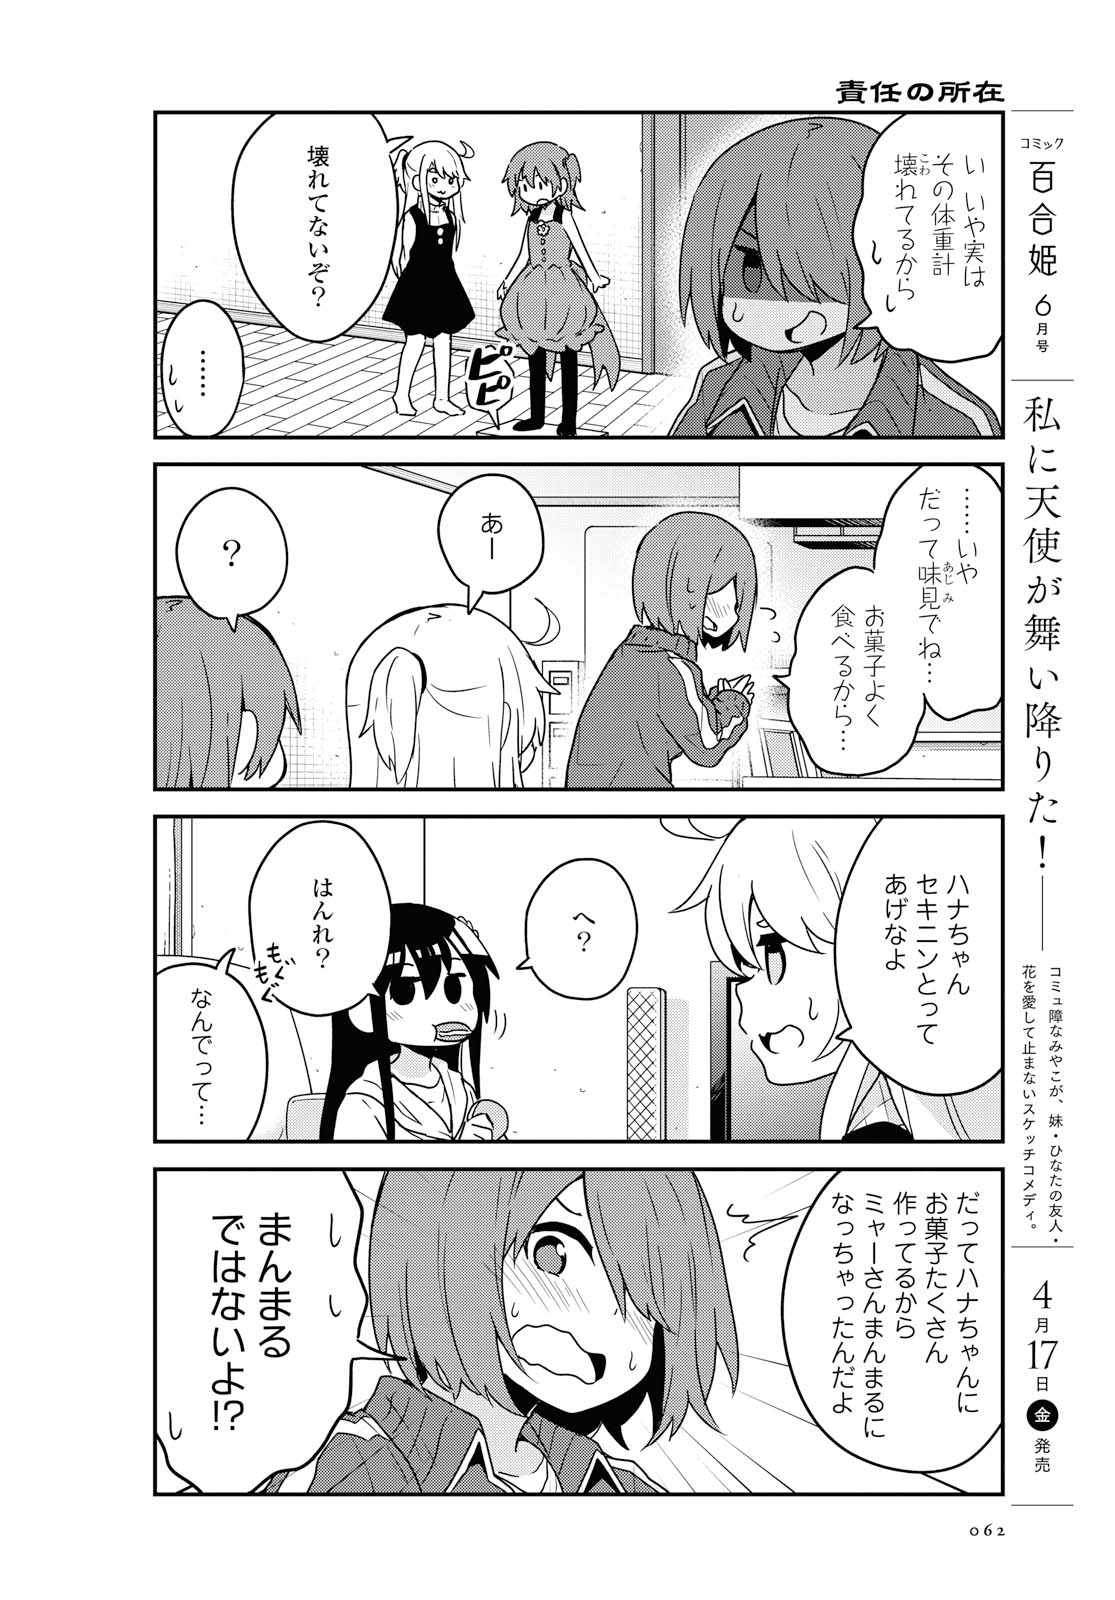 Watashi ni Tenshi ga Maiorita! - Chapter 63 - Page 4